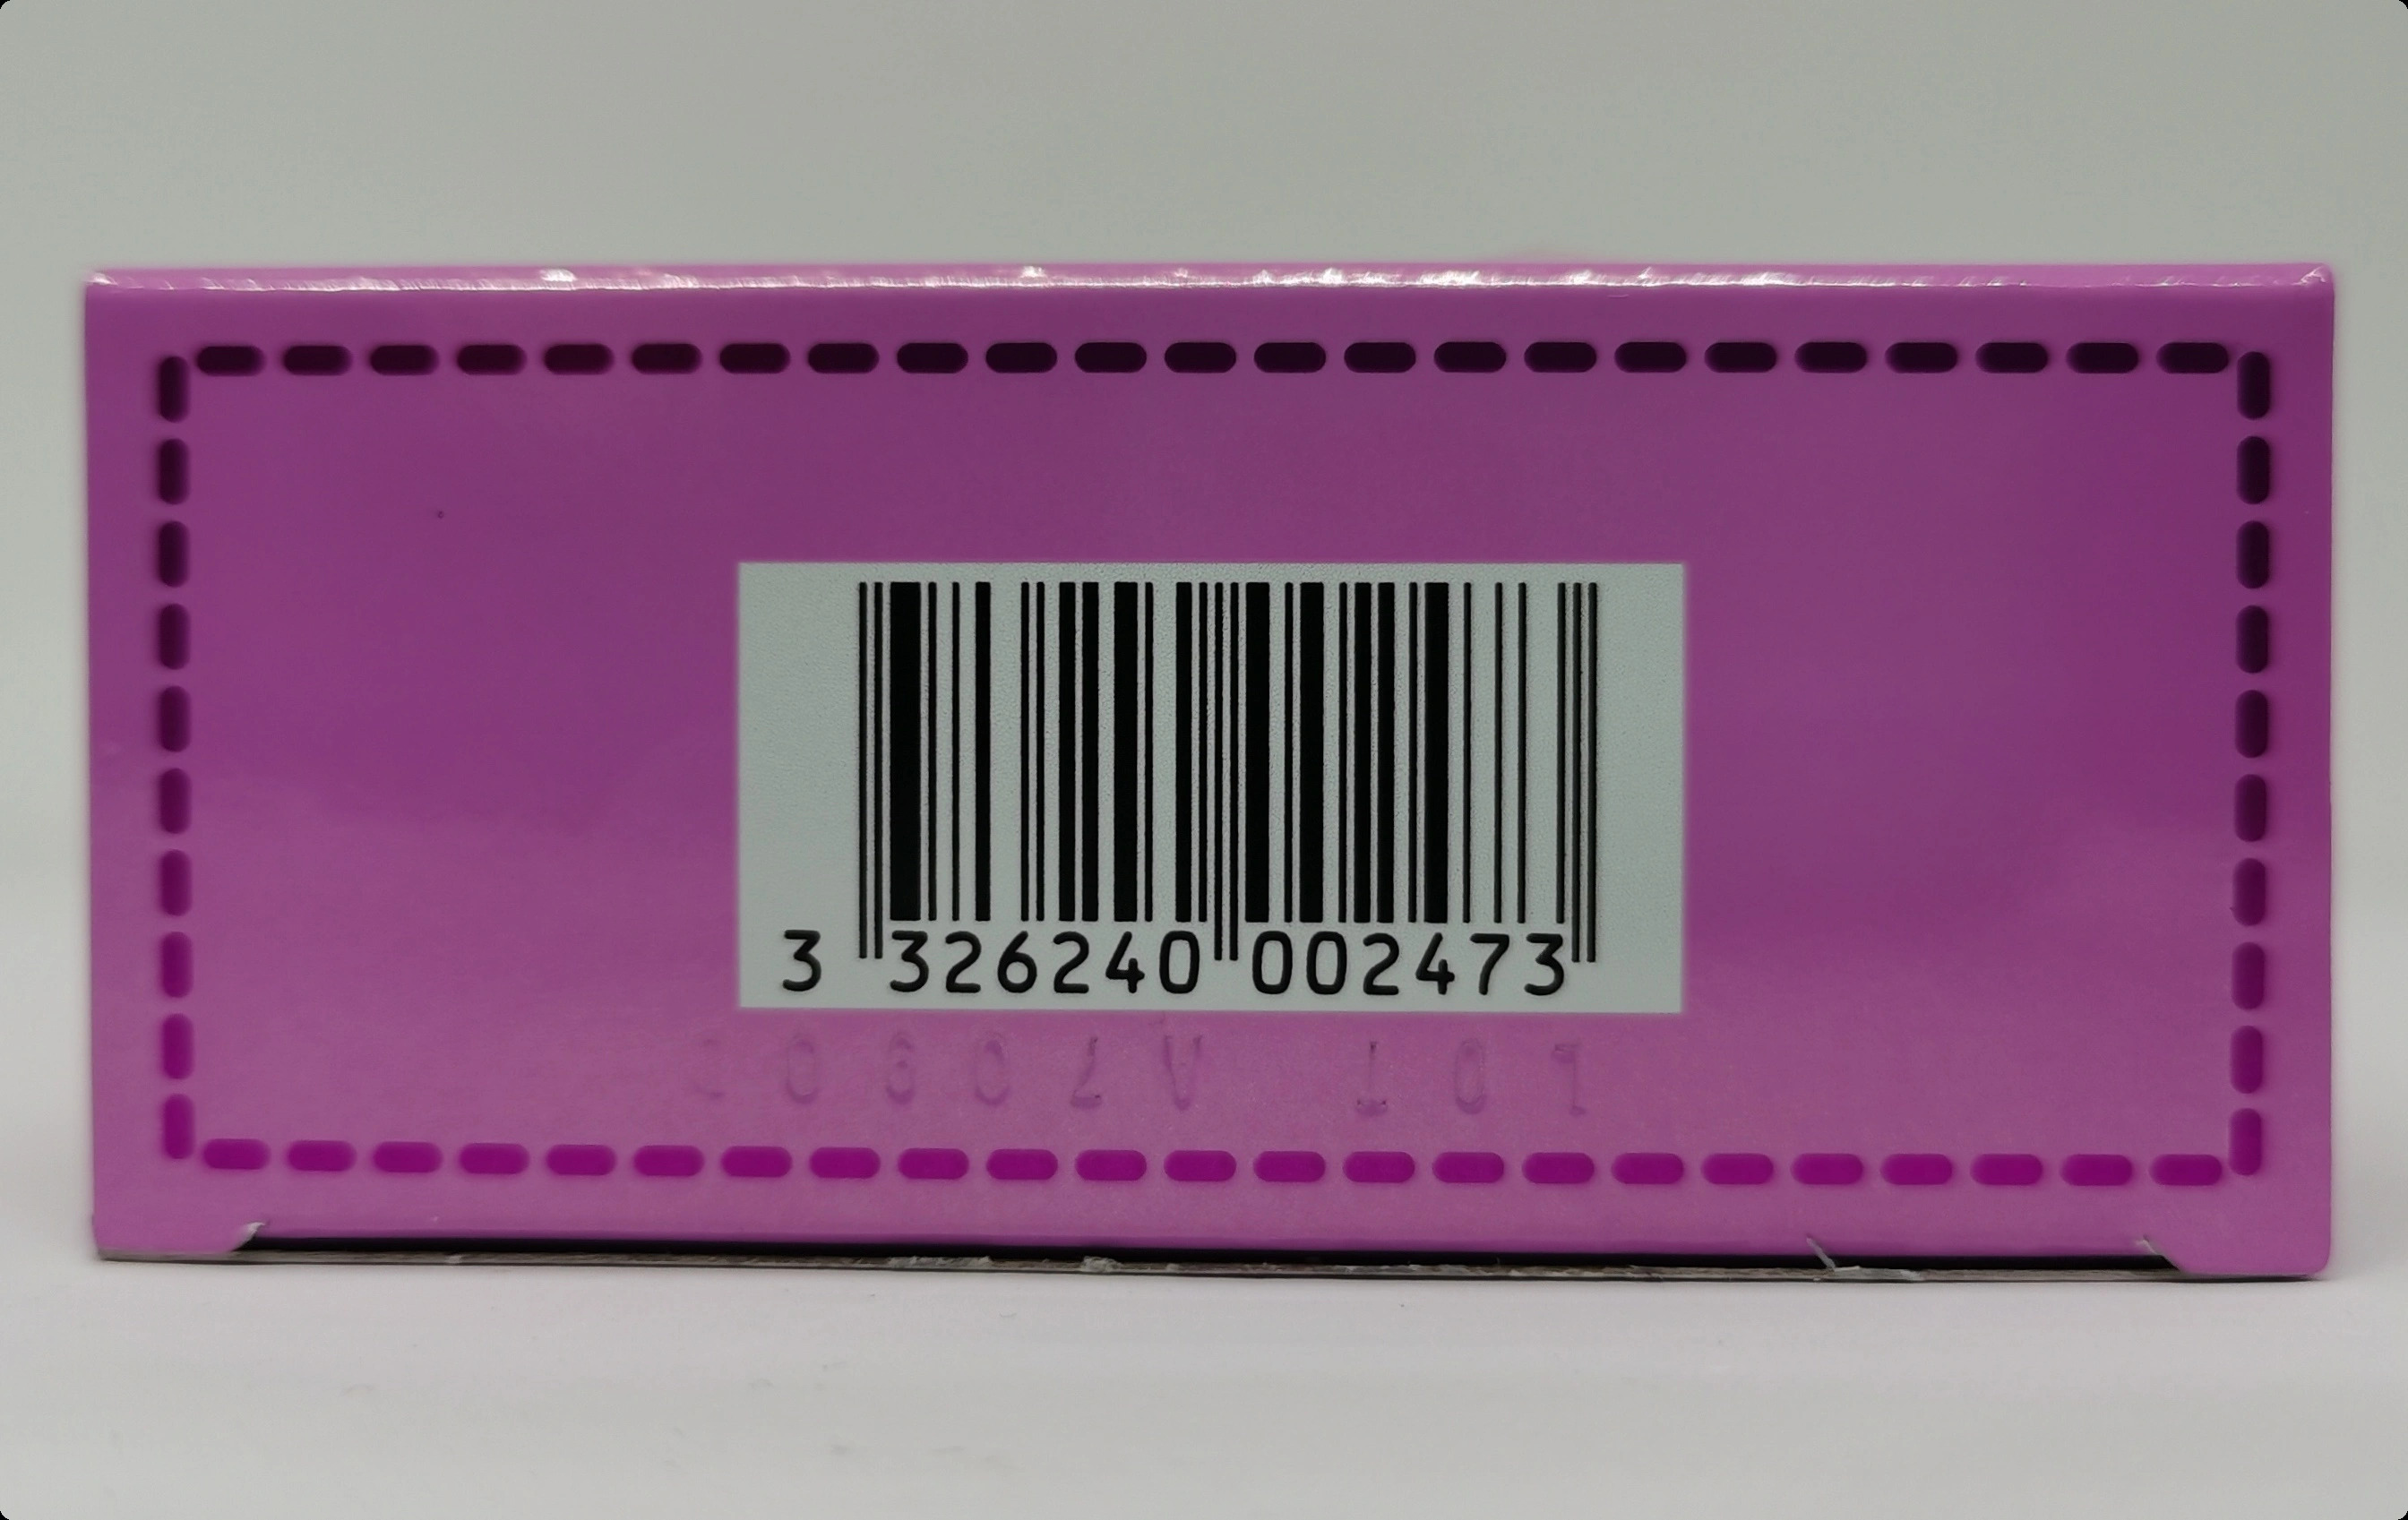 Парфюмерная вода 75&nbsp;мл - фото штрих-кода и батч-кода на коробке